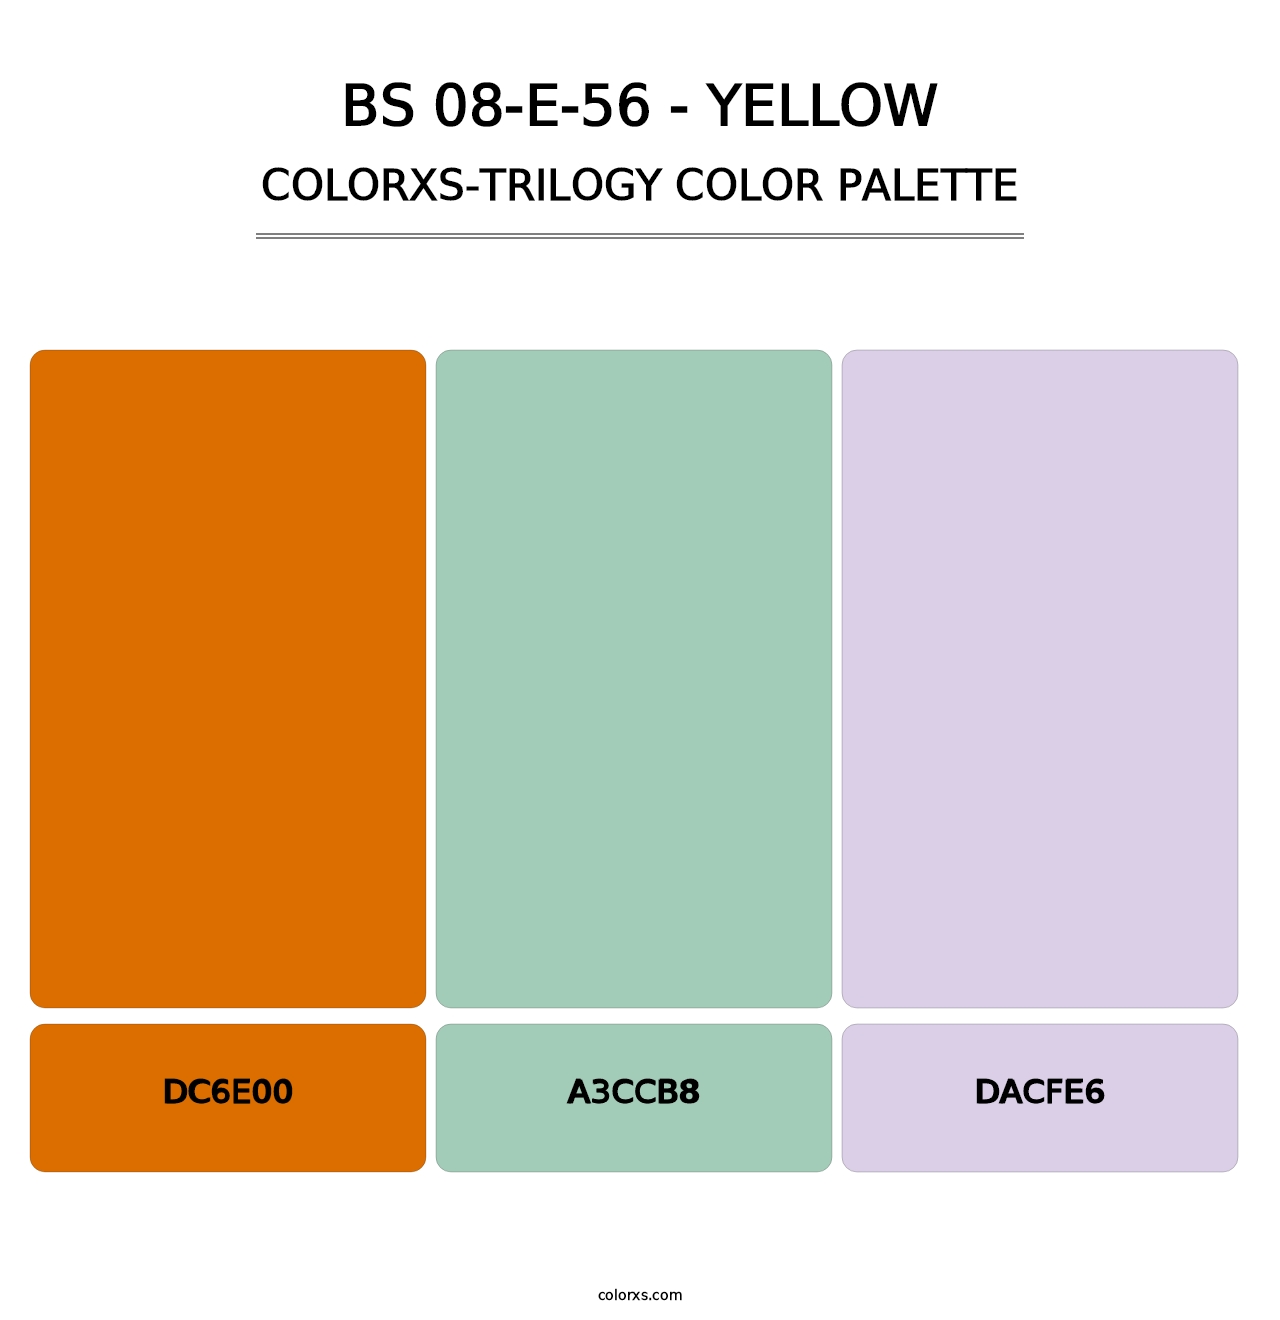 BS 08-E-56 - Yellow - Colorxs Trilogy Palette